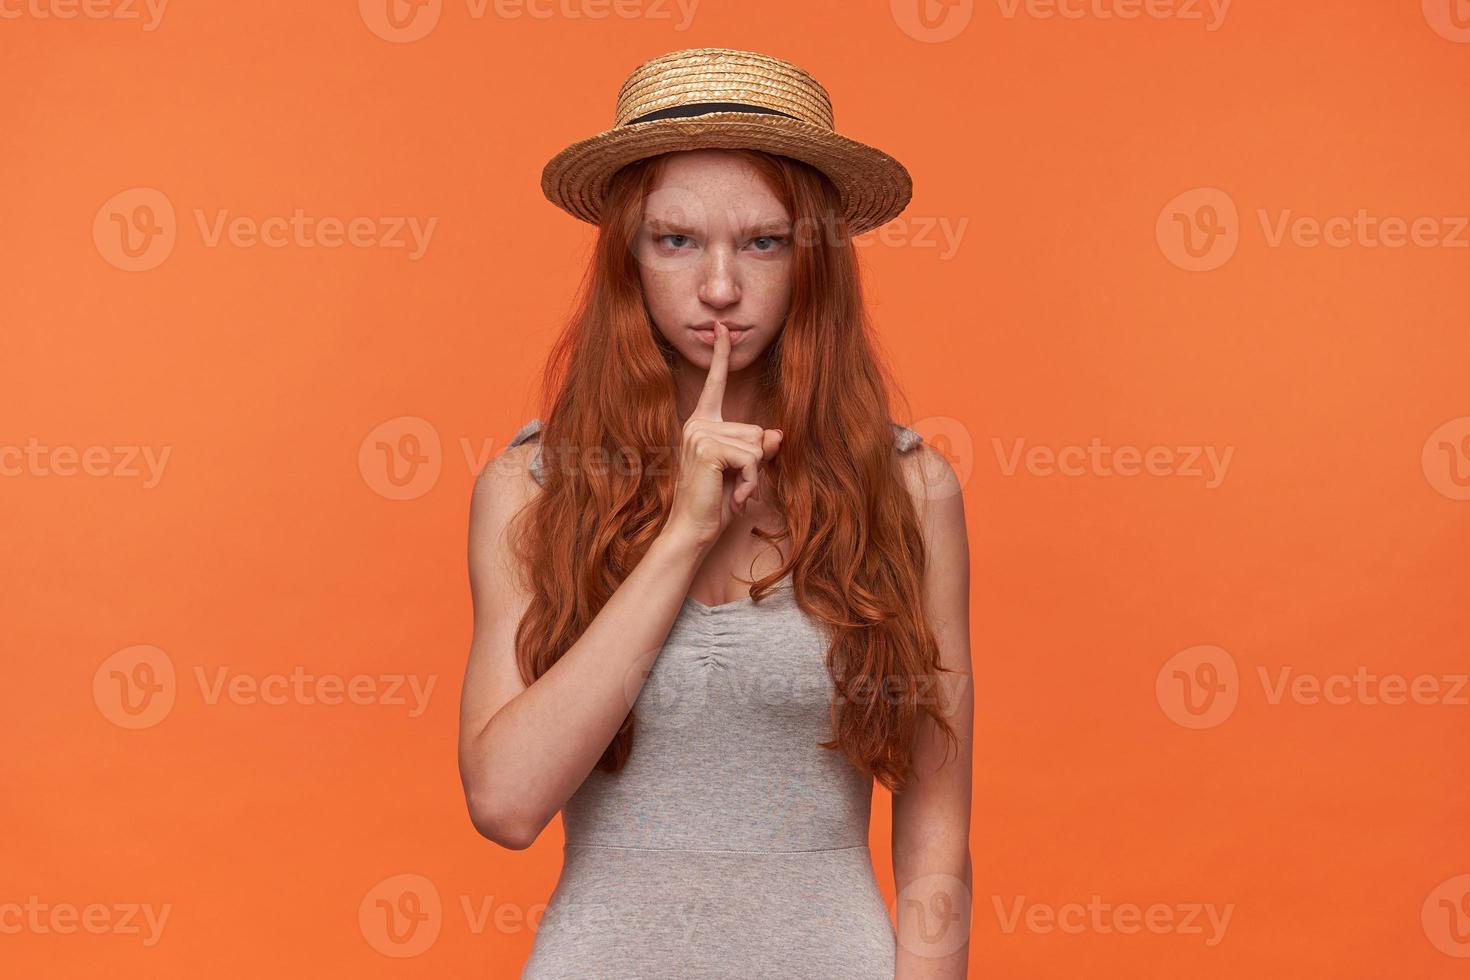 foto in studio di bella giovane femmina dai capelli londi foxy alzando il dito indice in un gesto di silenzio, guardando alla telecamera con la faccia seria e chiedendo silenzio, isolata su sfondo arancione